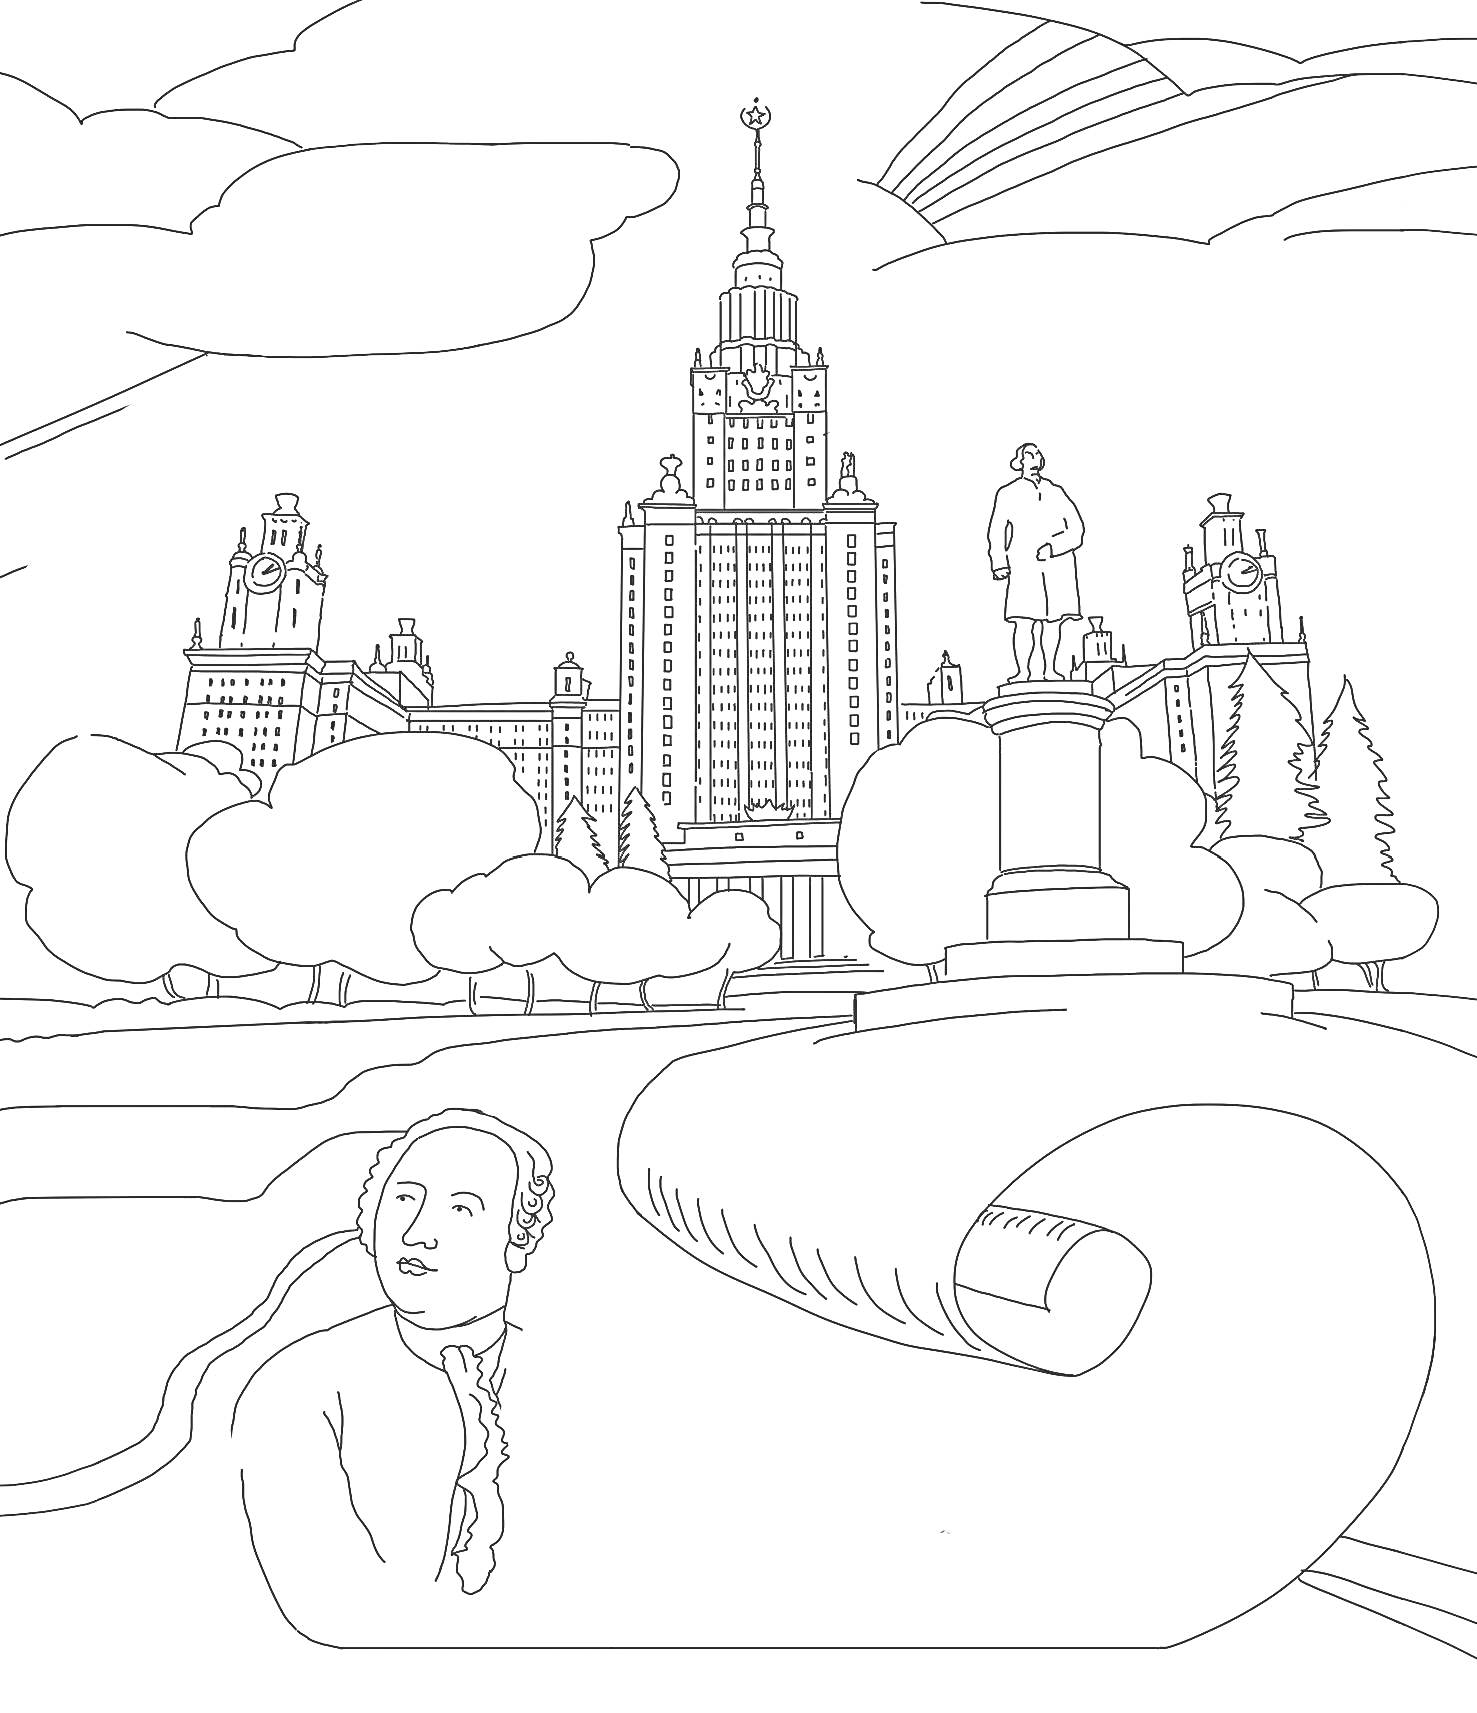 Московский государственный университет (МГУ), памятник Ломоносову и аллея с деревьями и облаками